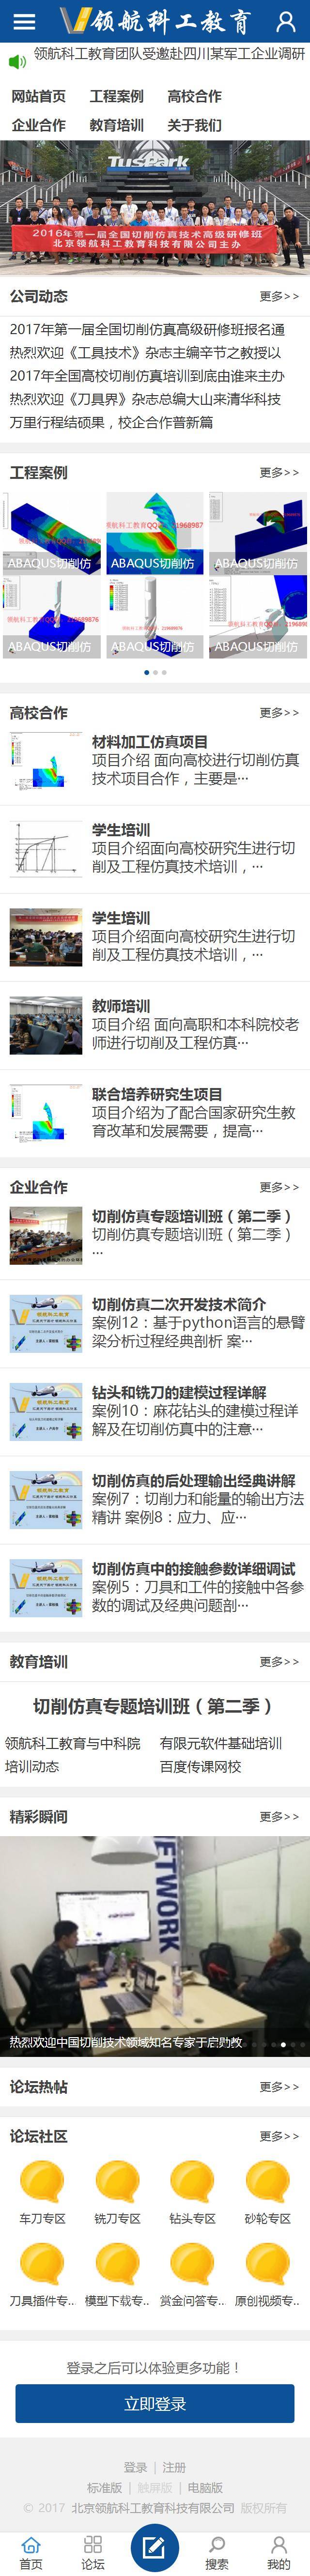 北京领航科工教育科技有限公司企业论坛